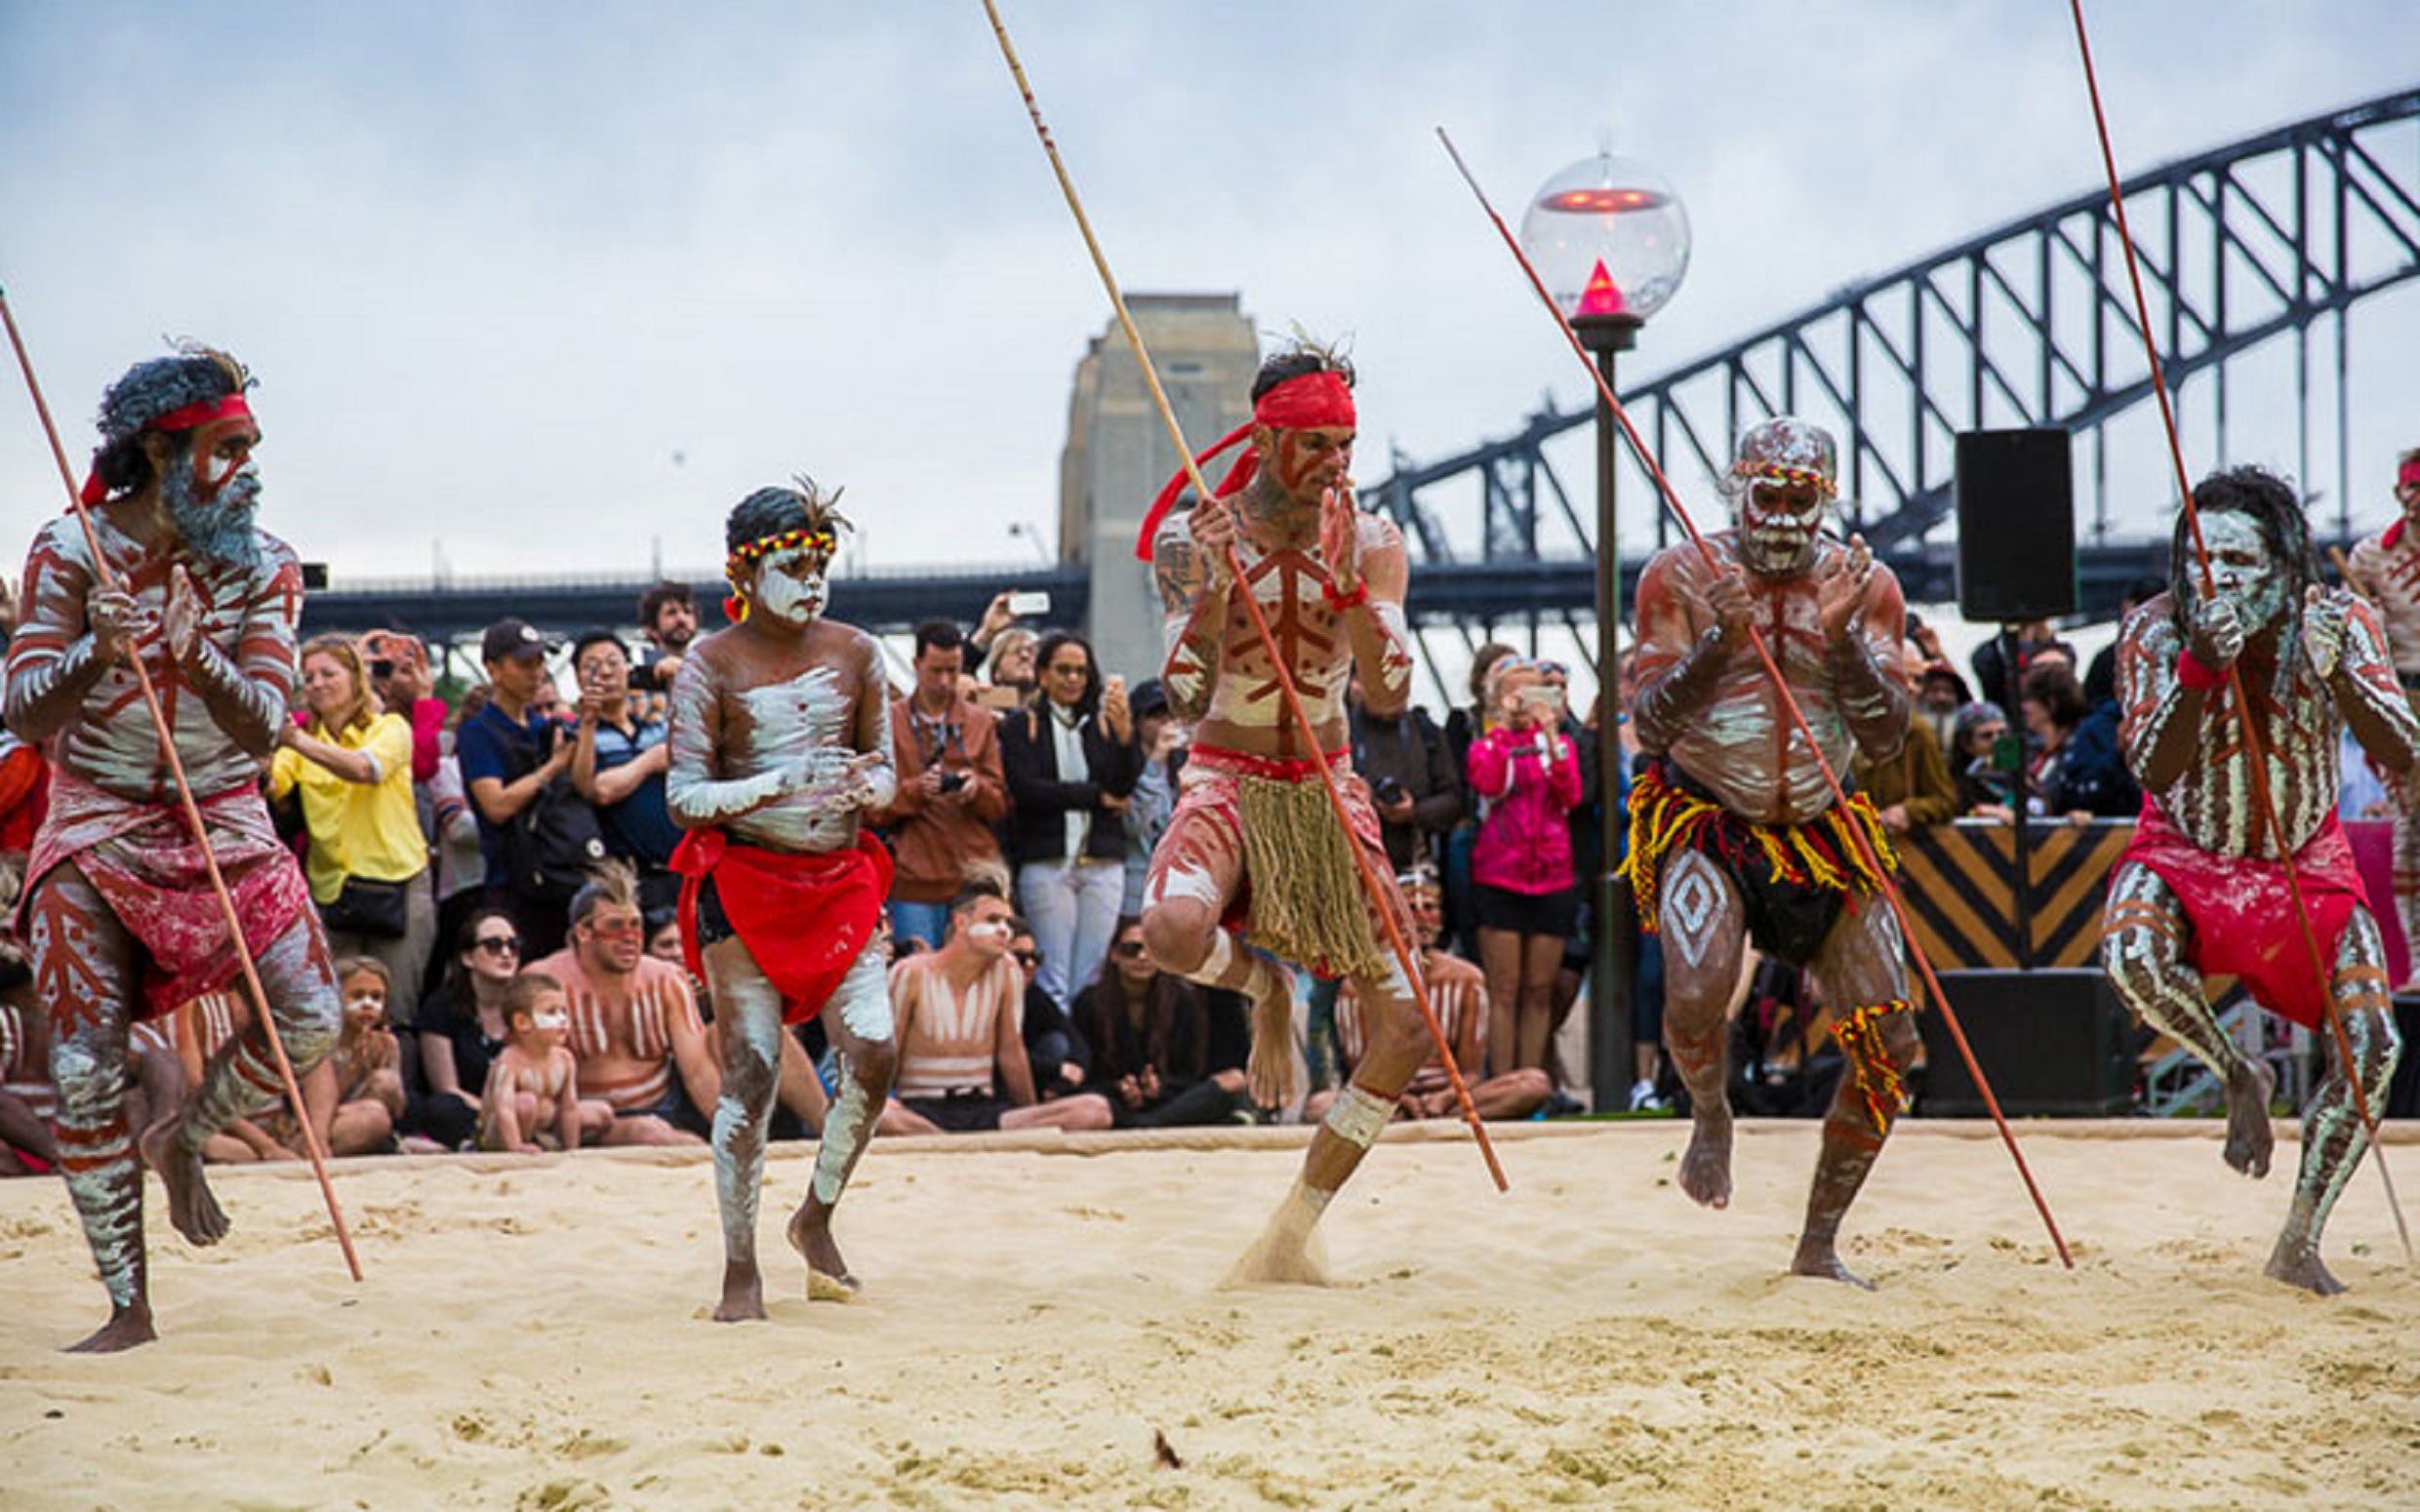 Koomurri Aboriginal Dancers - thumb 0